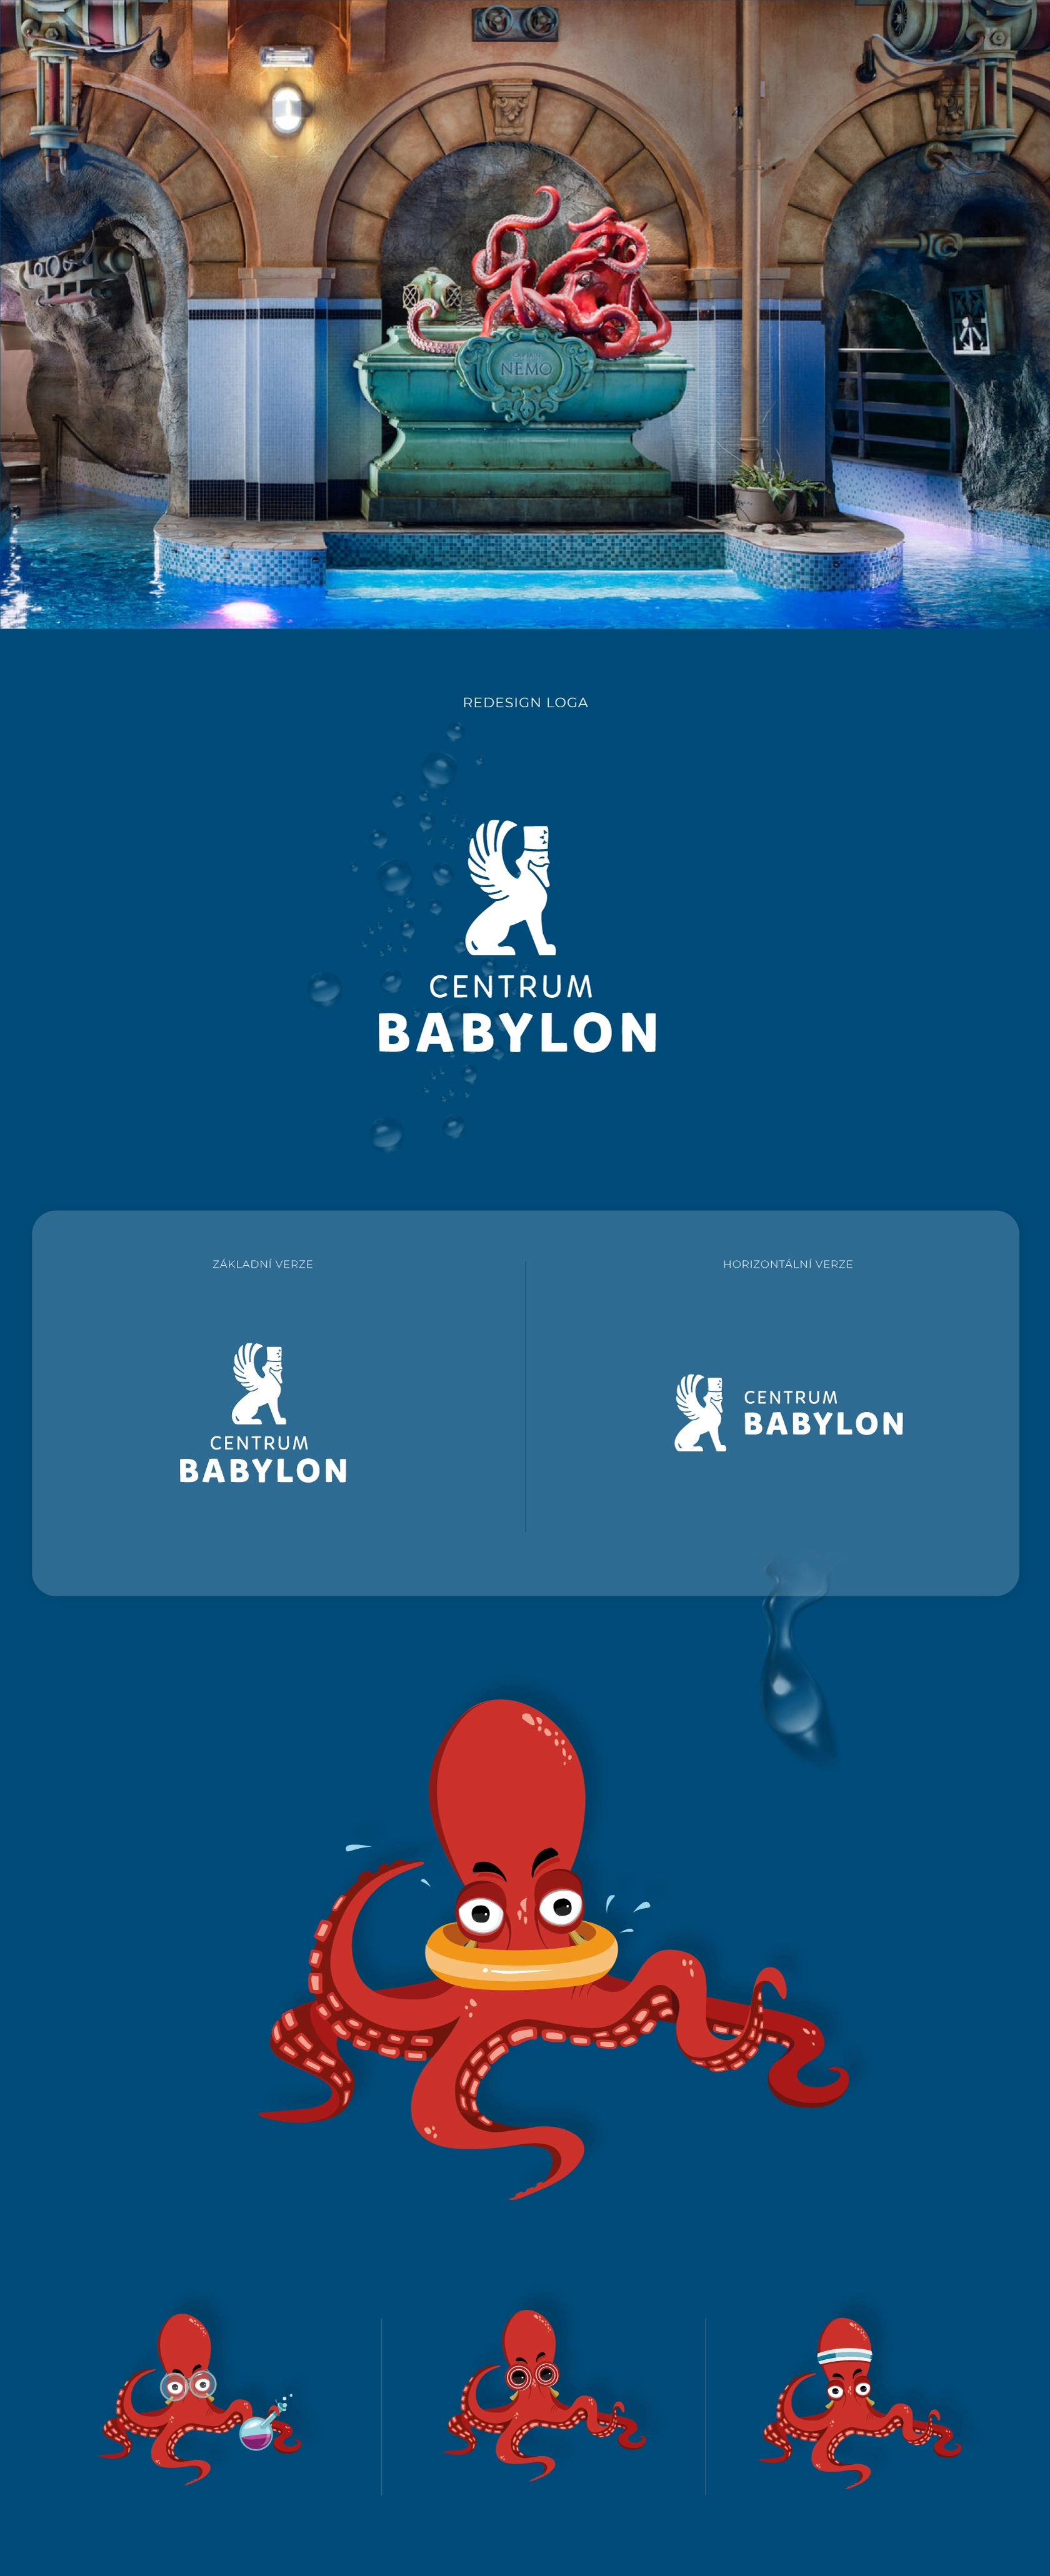 babylon_reference_01.jpg